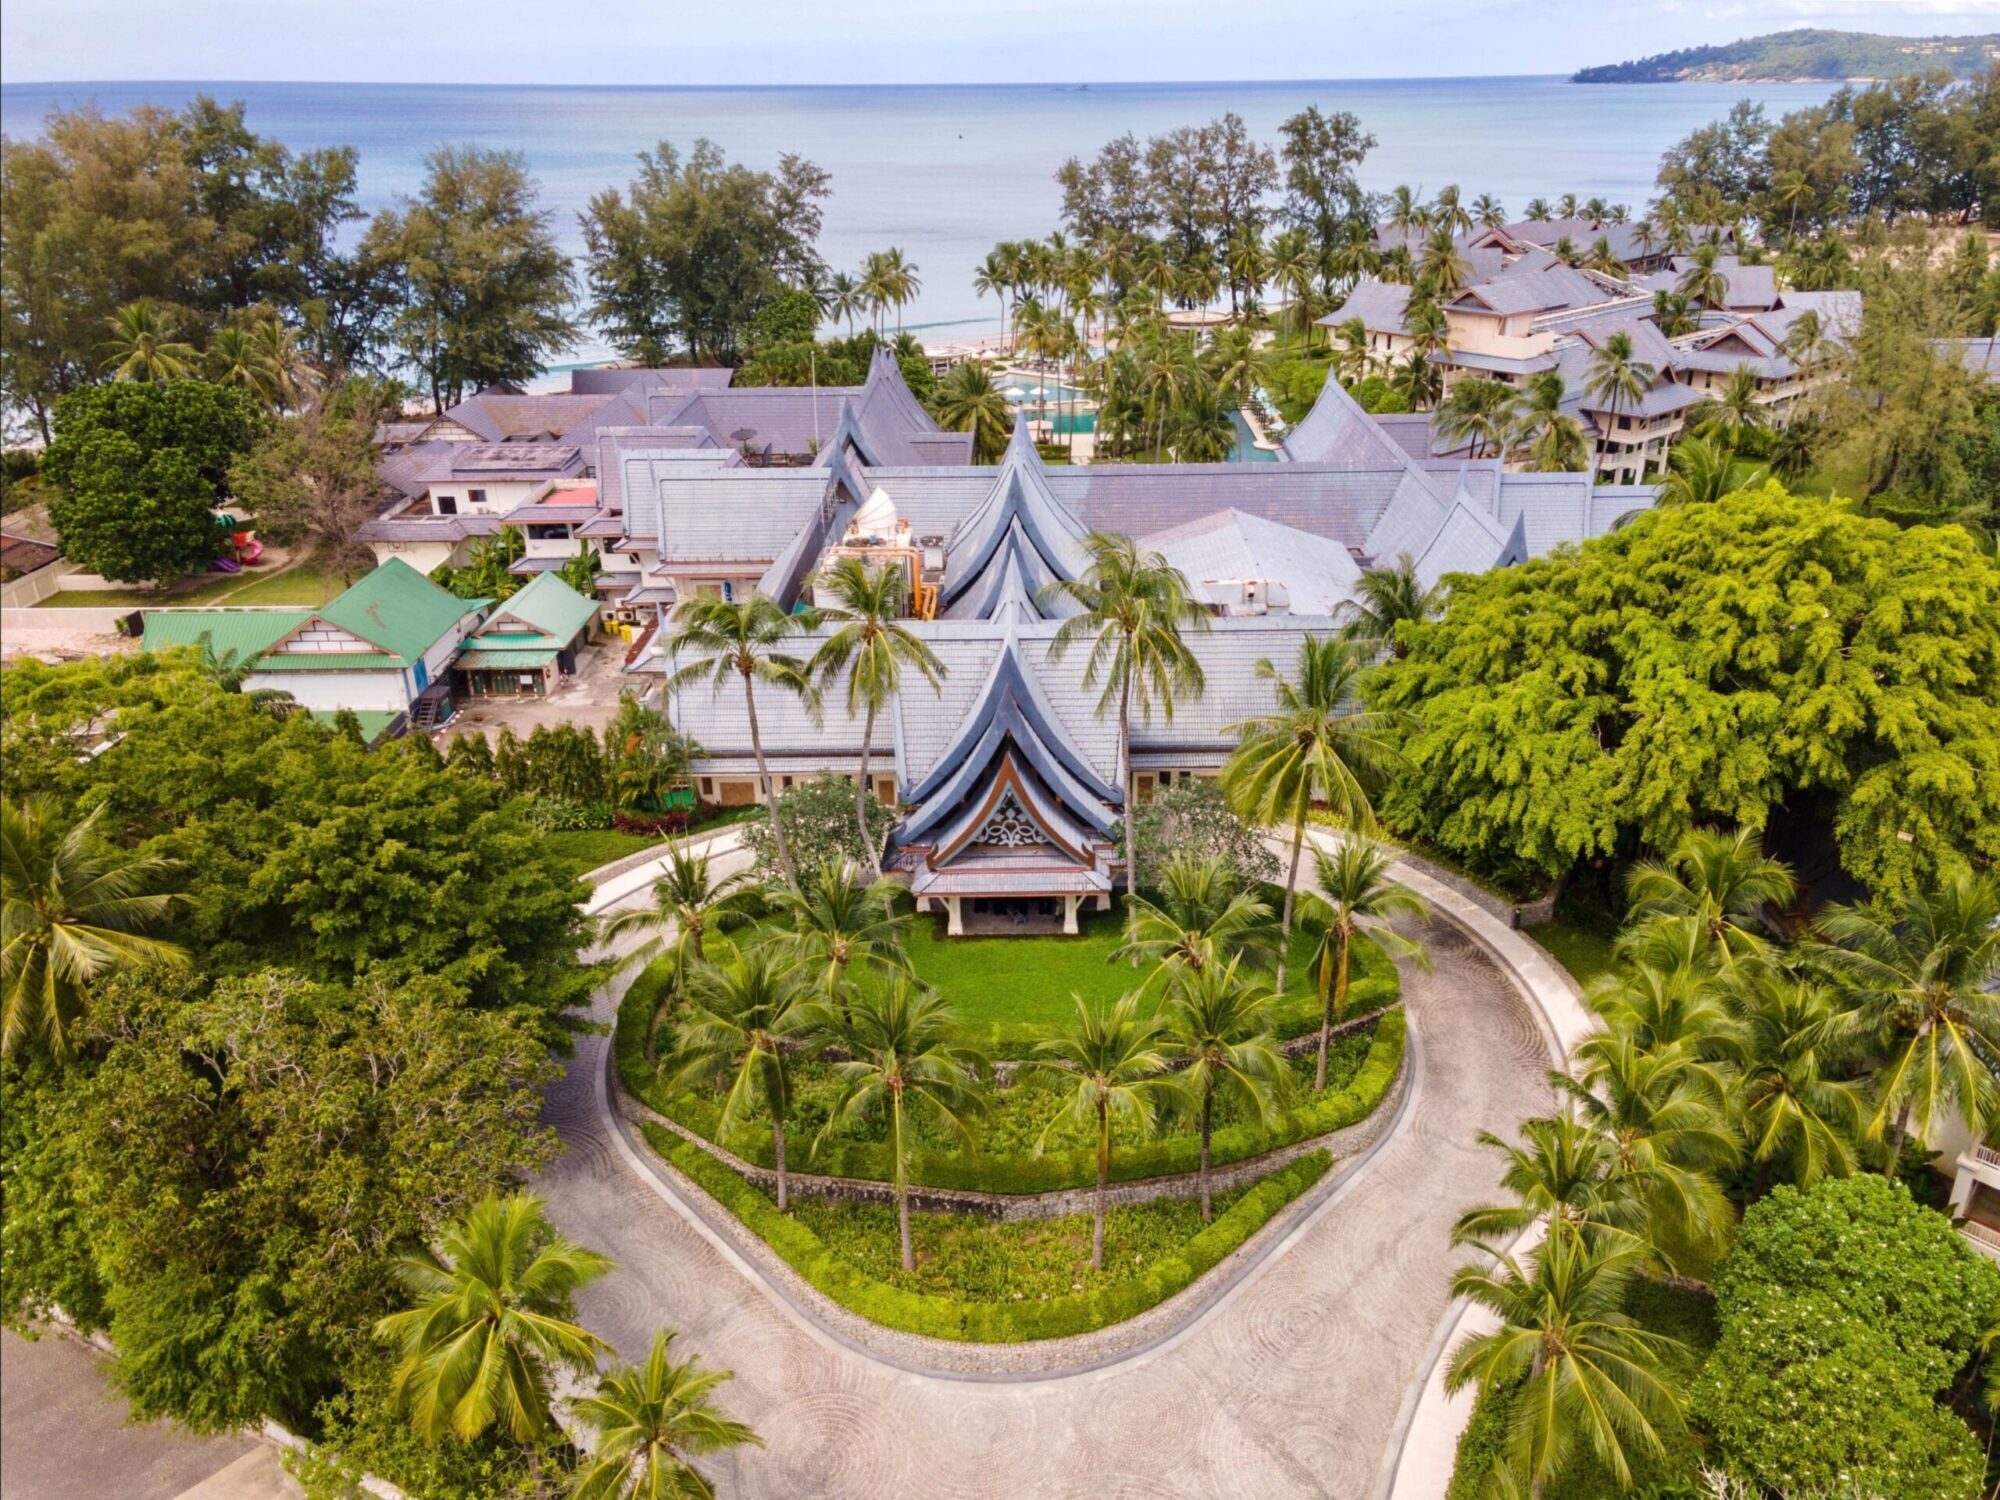 La marque de style de vie à l'esprit libre de S Hotels célèbre le retour à la maison alors que deux stations balnéaires ouvrent en Thaïlande